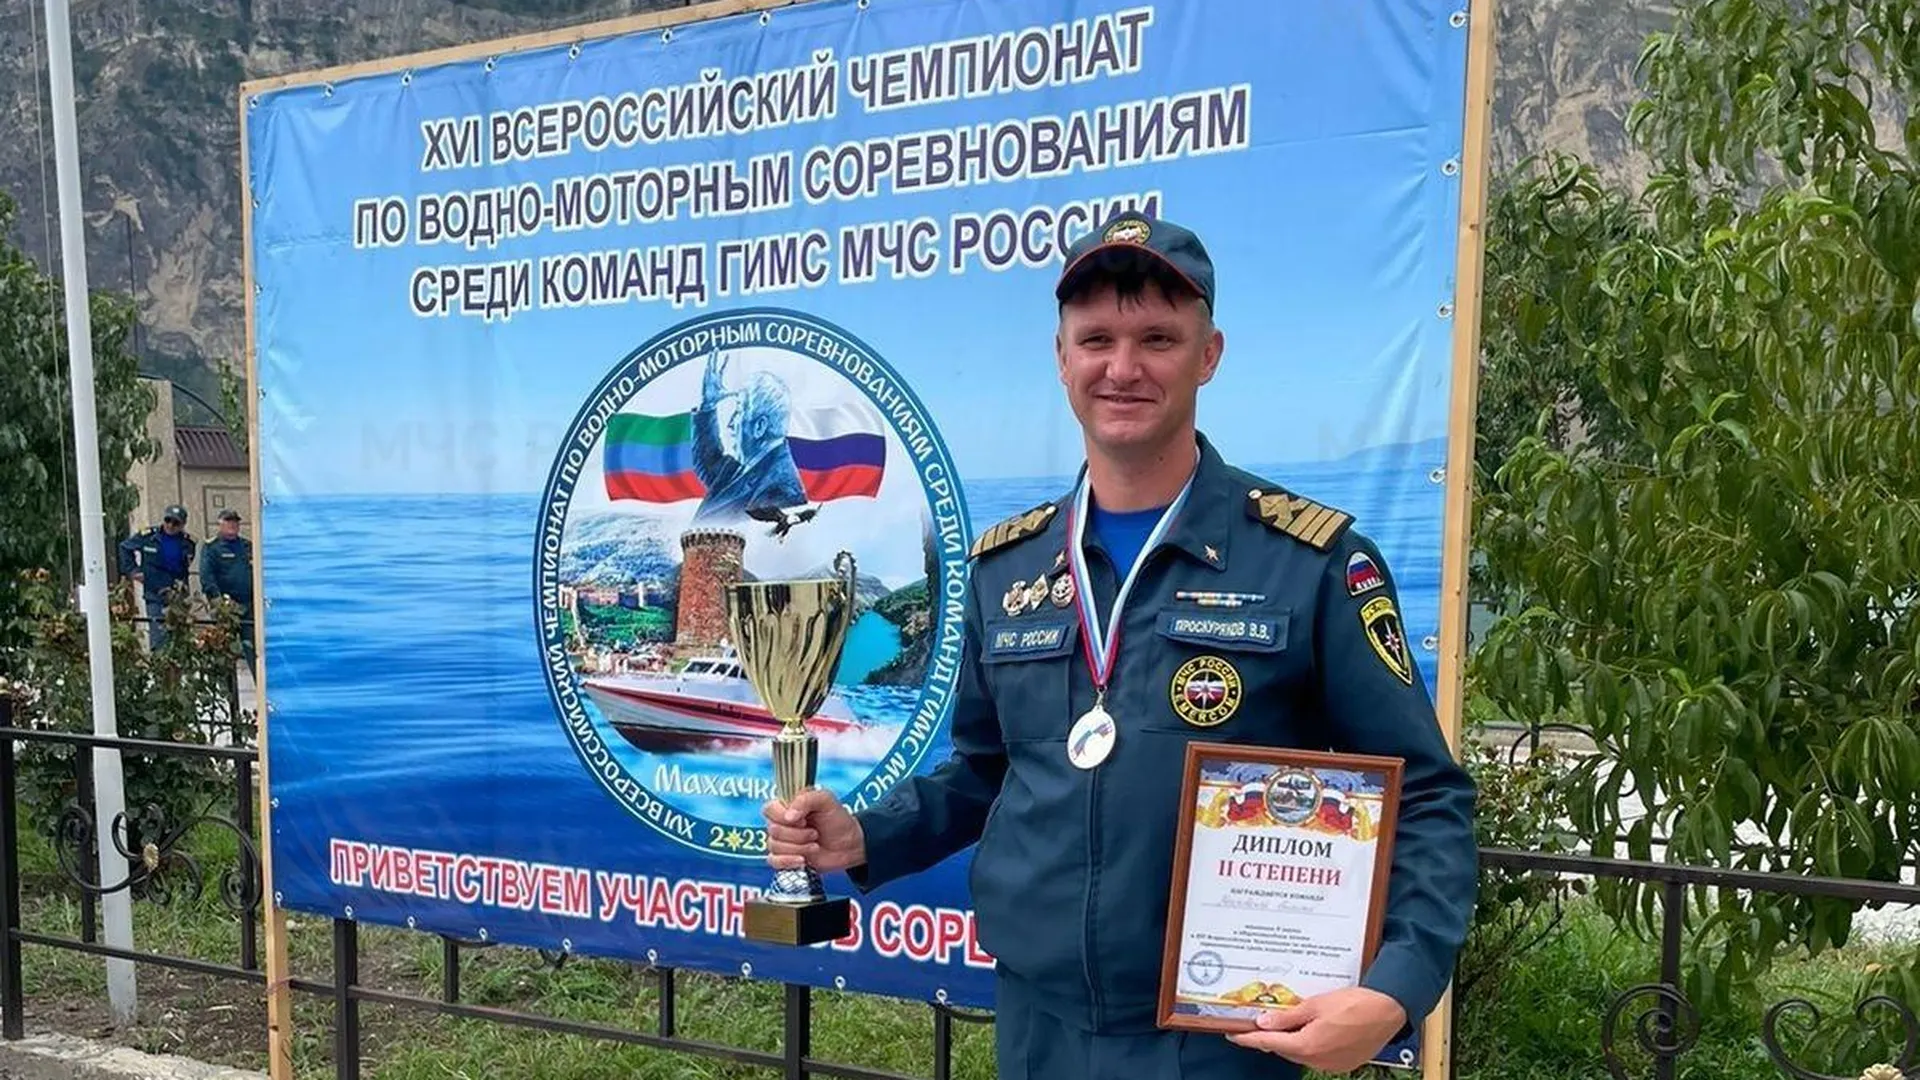 Сборная Подмосковья стала призером чемпионата по водно‑моторным соревнованиям